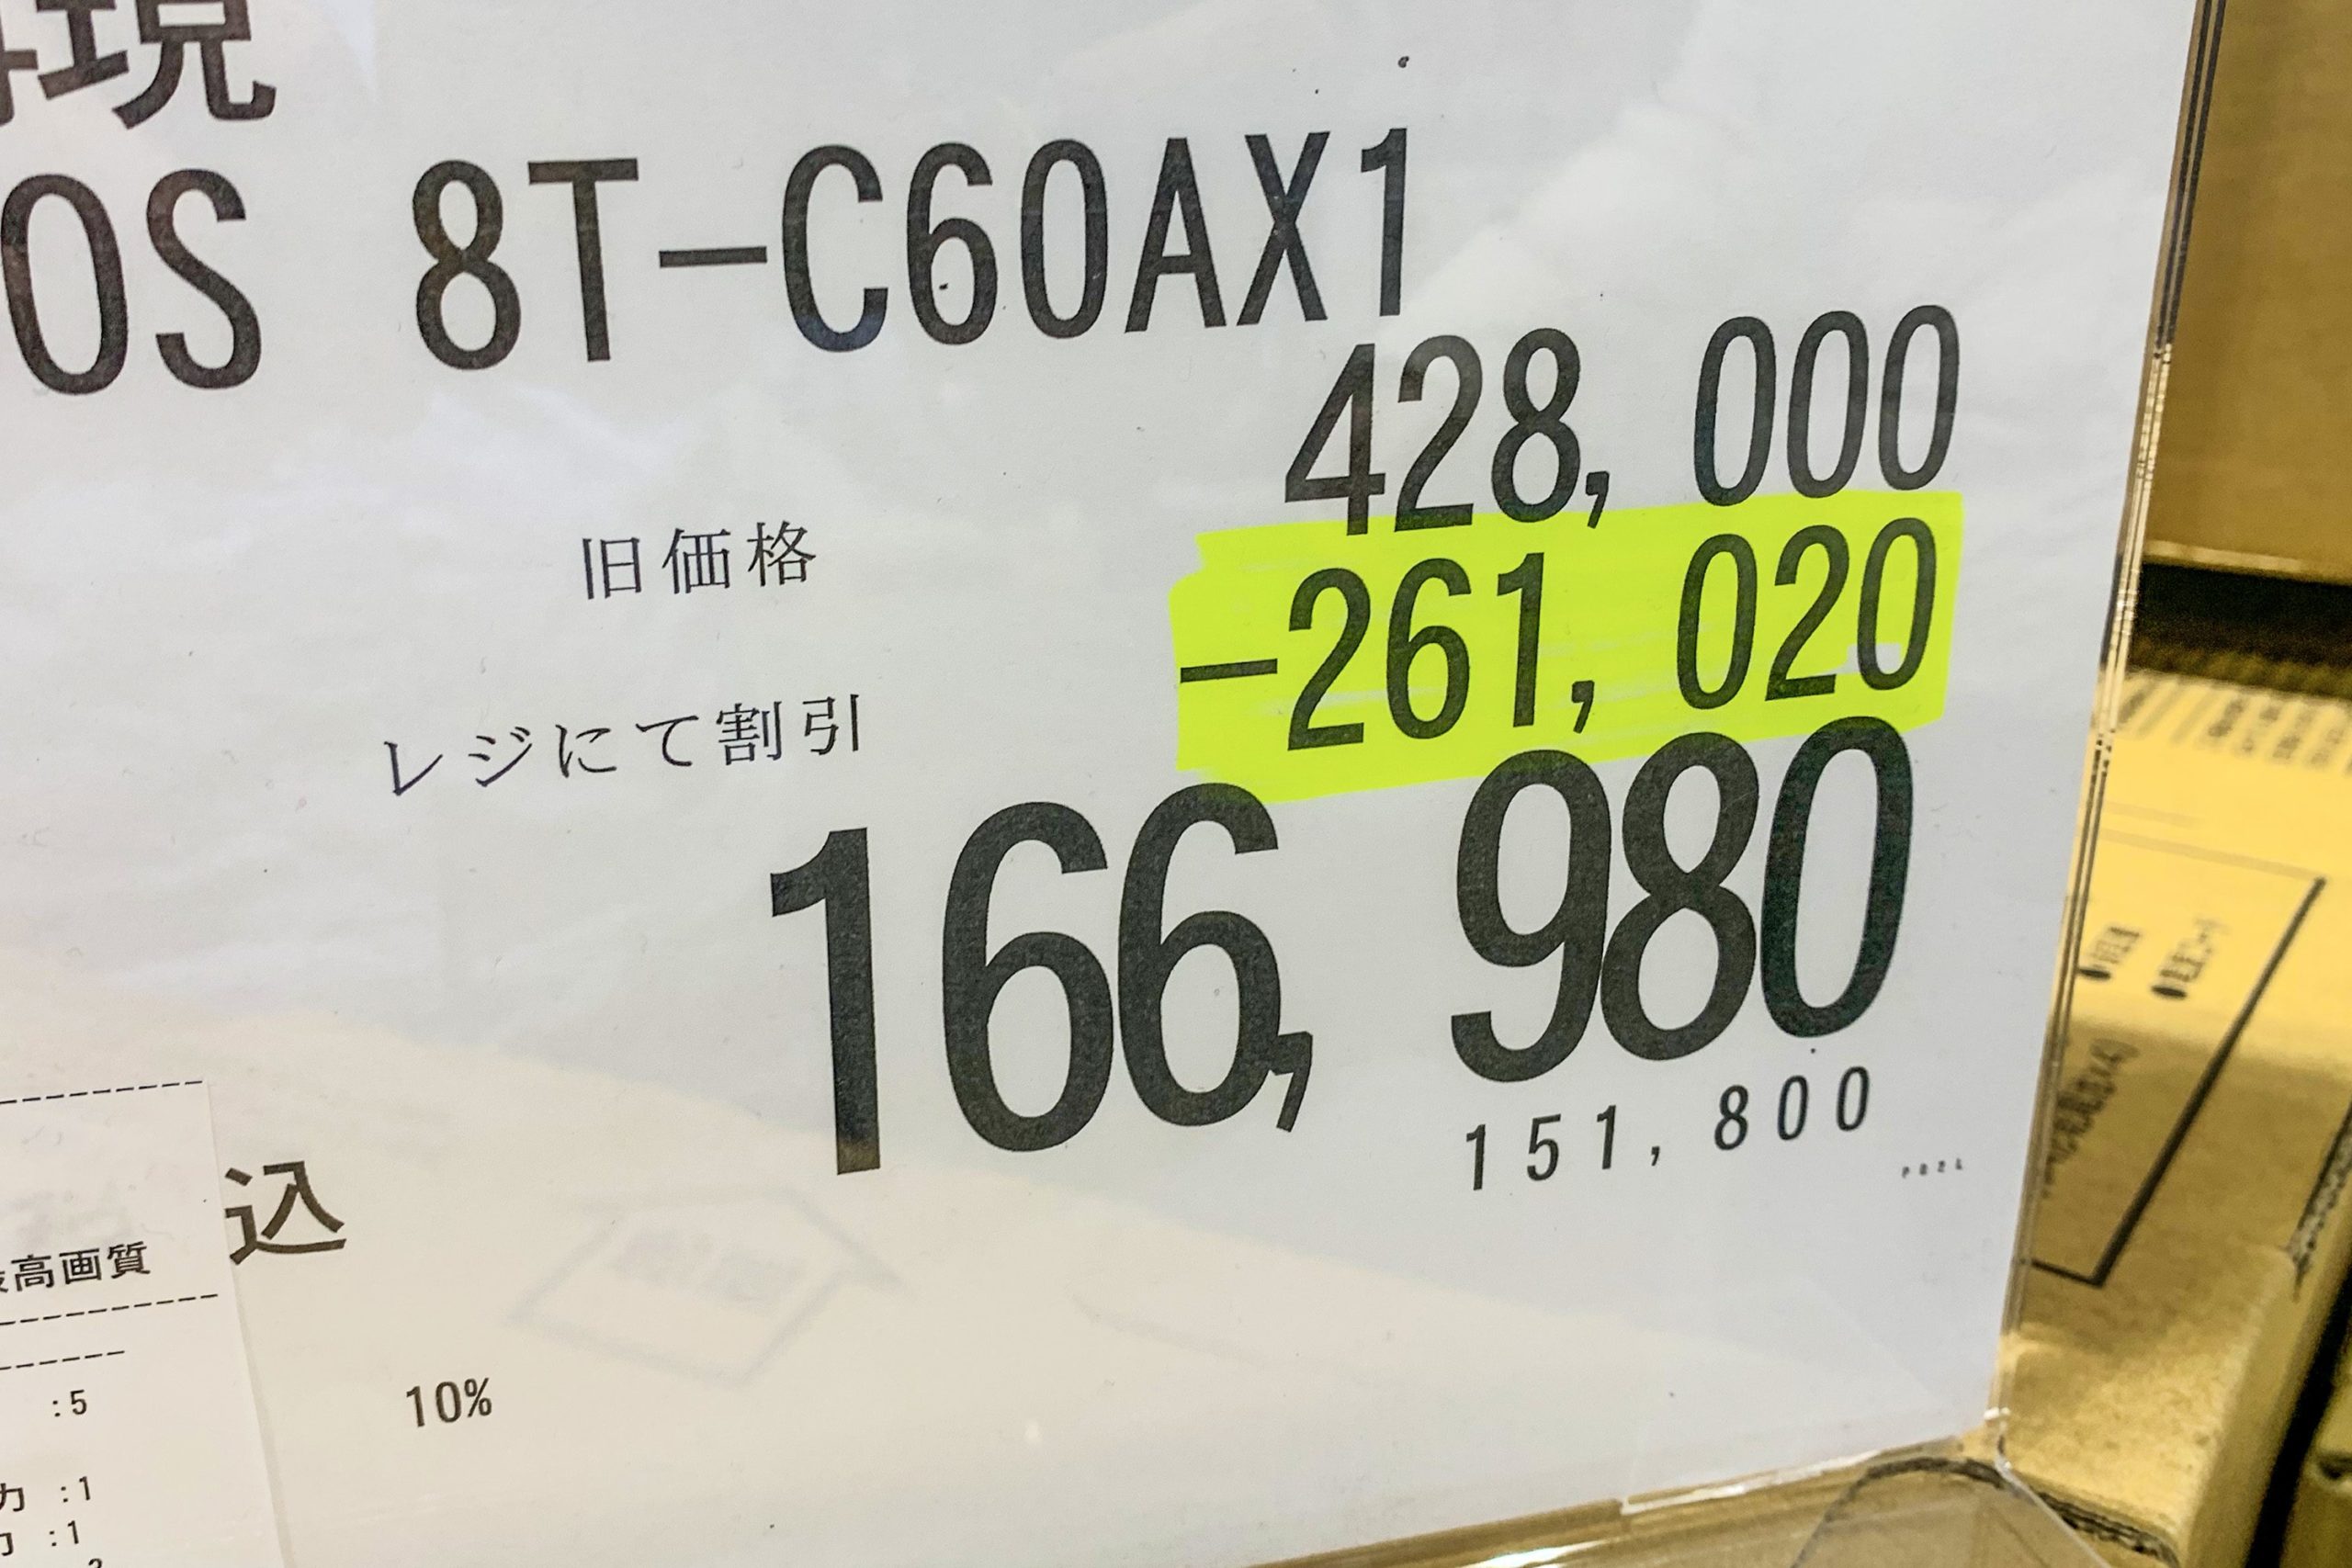 コストコのブラックフライデー 驚異の 26万円引き商品 登場も不評の理由 Sirabee1127costco7